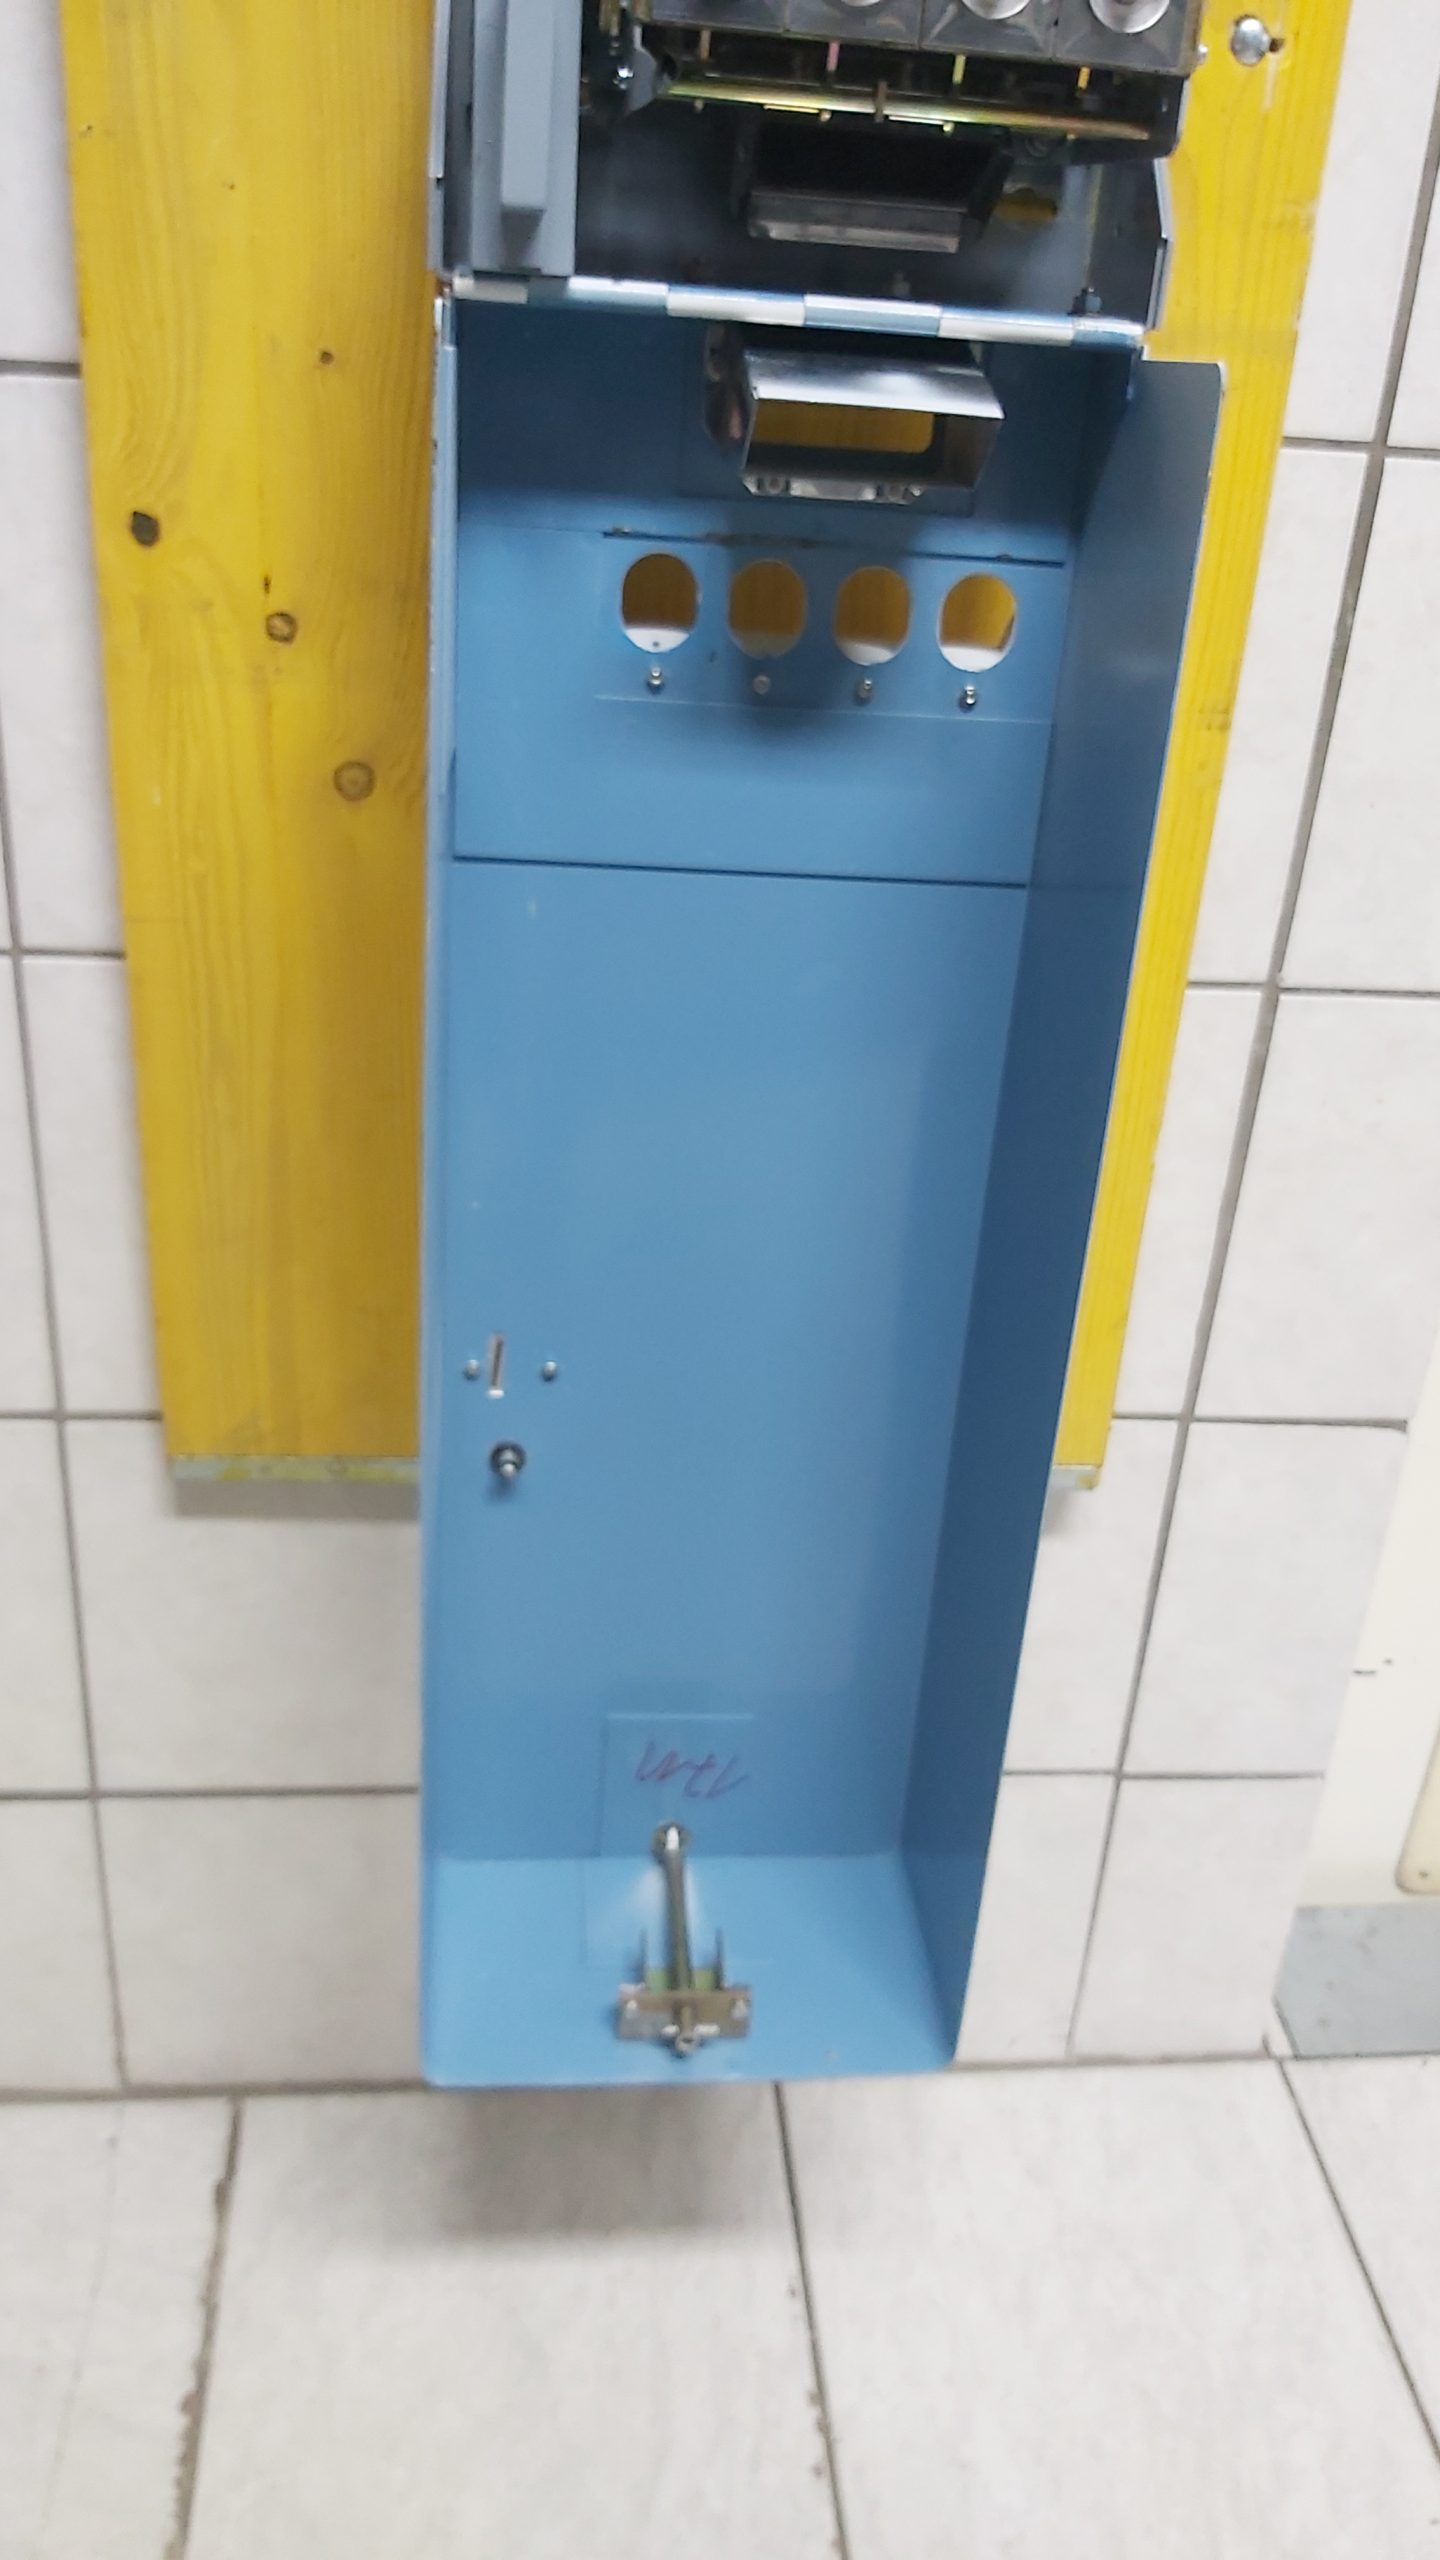 Kondomautomat „Liebespaar“ 4 Schacht